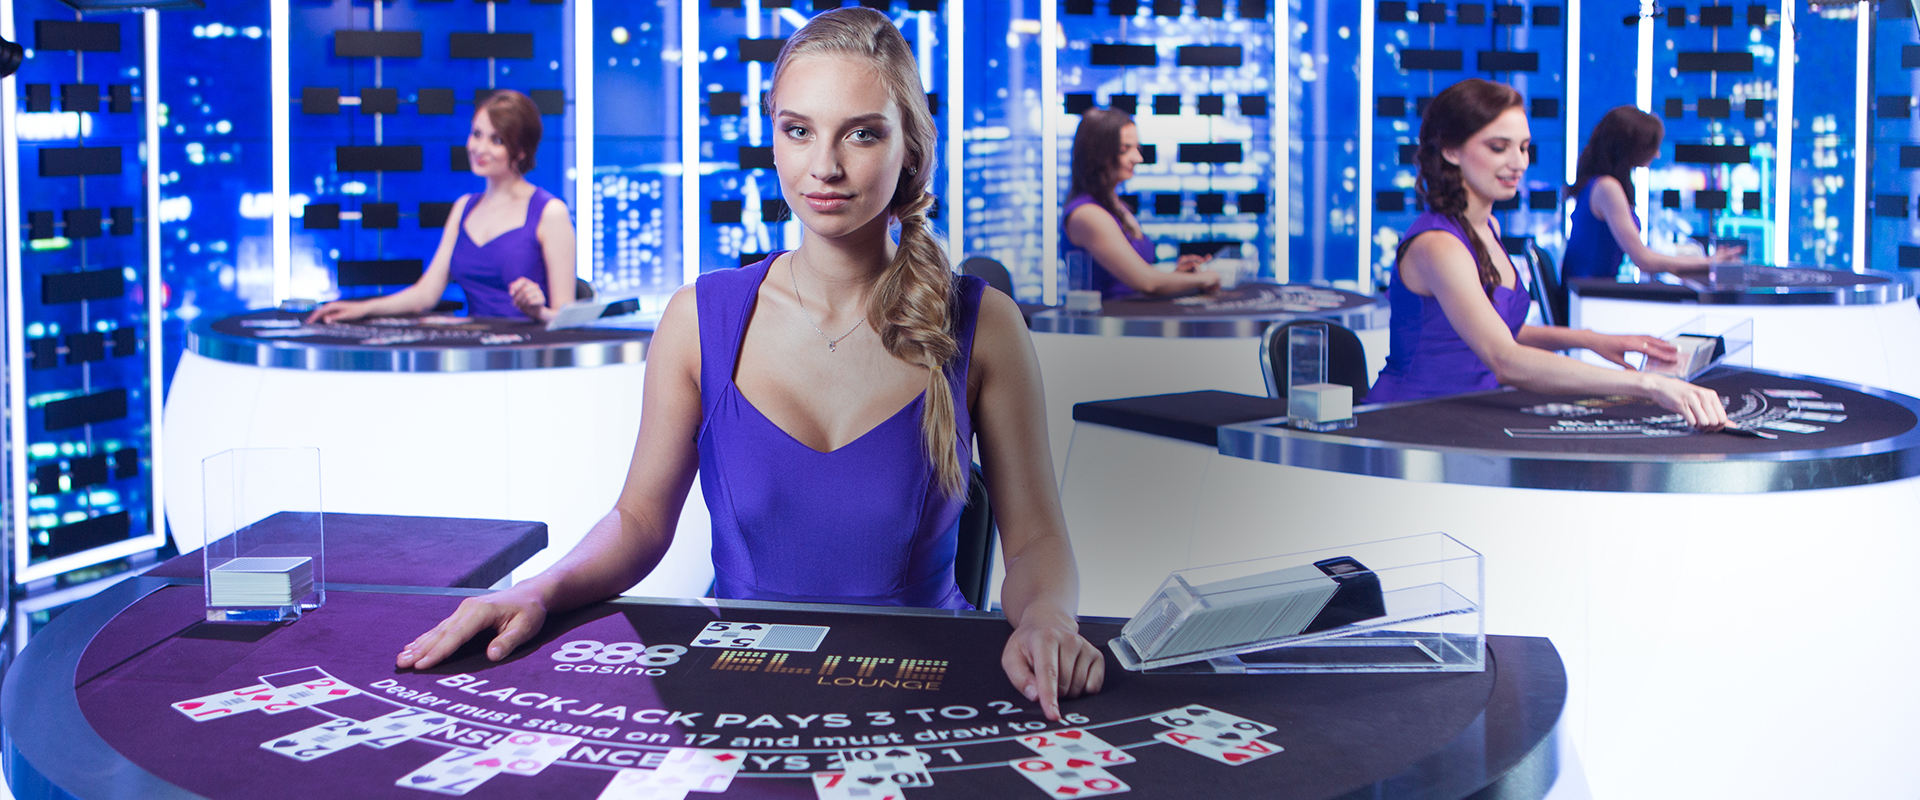 888 Elite Lounge propulsé par le logiciel de Casino en direct Evolution Gaming